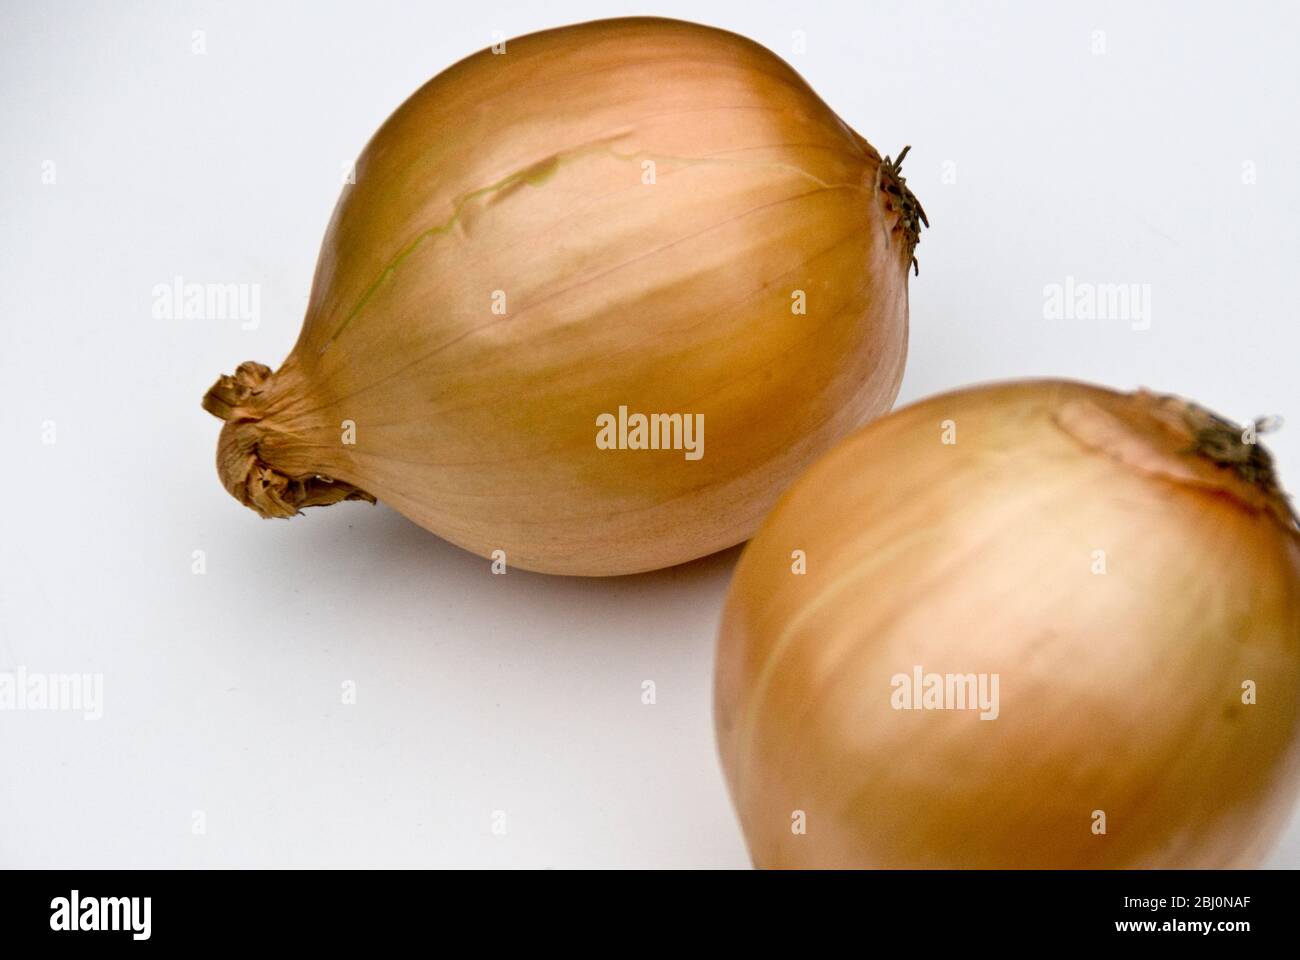 Zwei ganze Zwiebeln auf weißer Oberfläche - Stockfoto